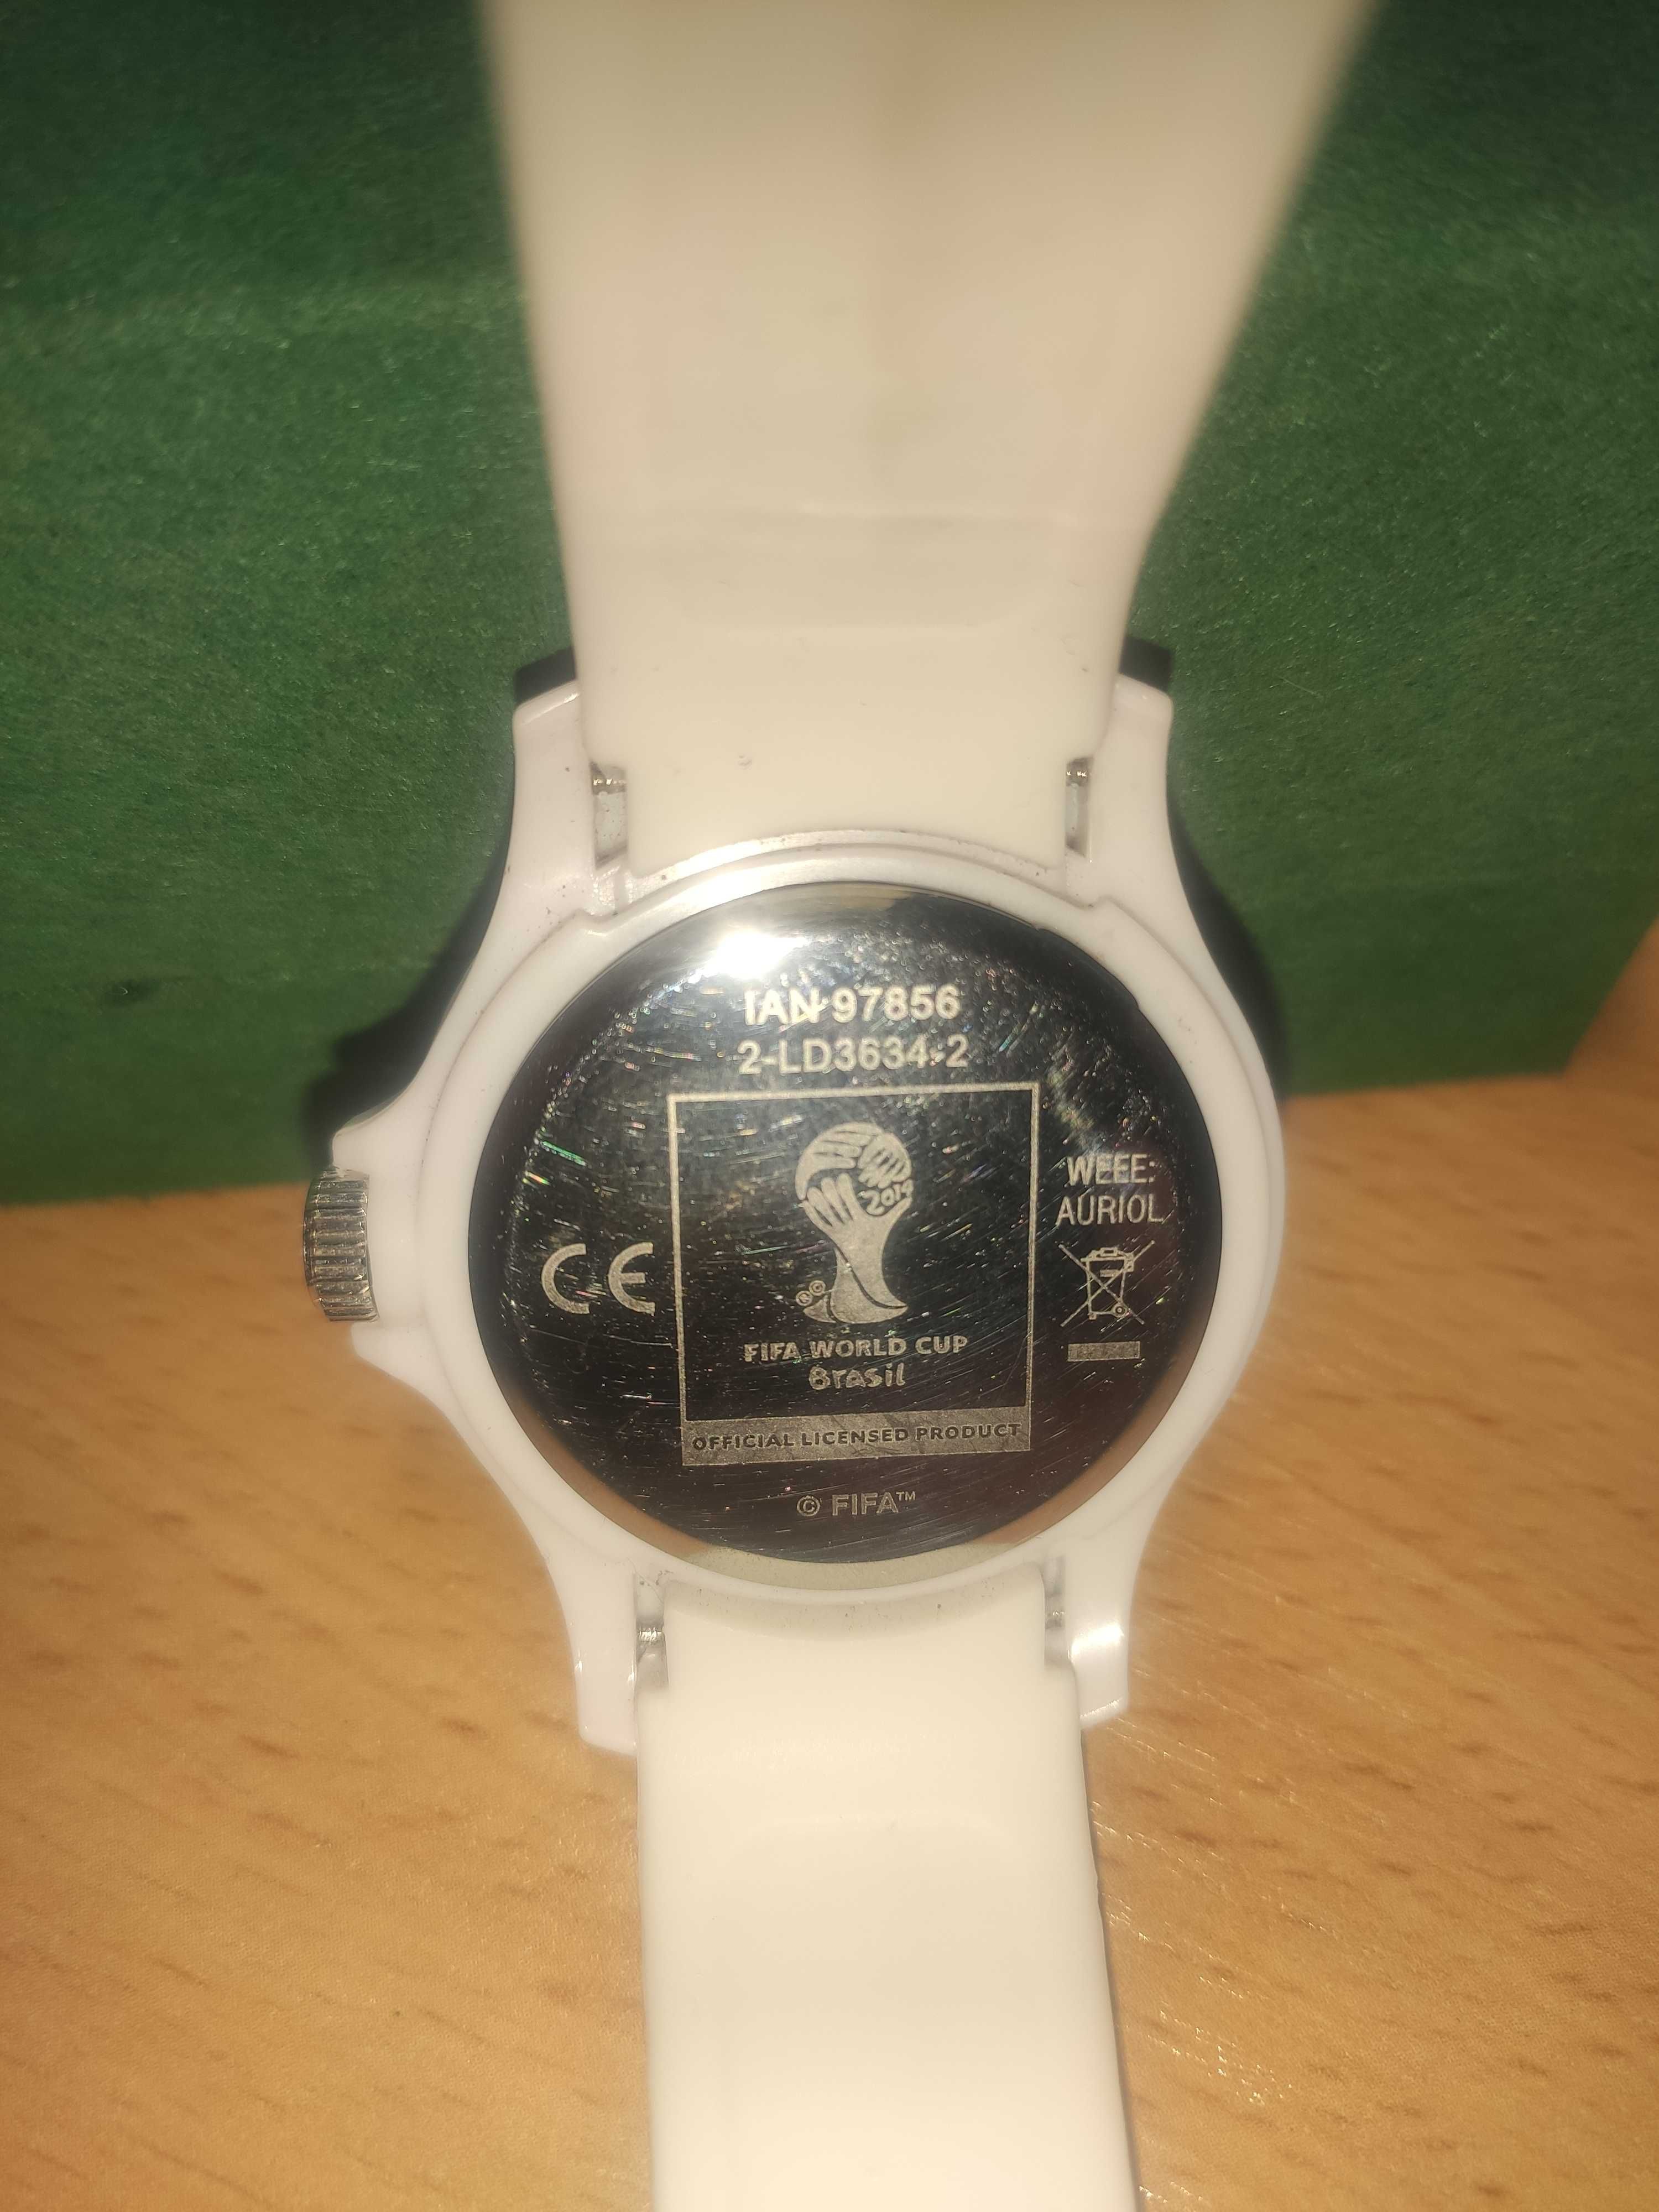 Sprzedam używany kolekcjonerski zegarek FIFA WORLD CUP BRASIL 2014.